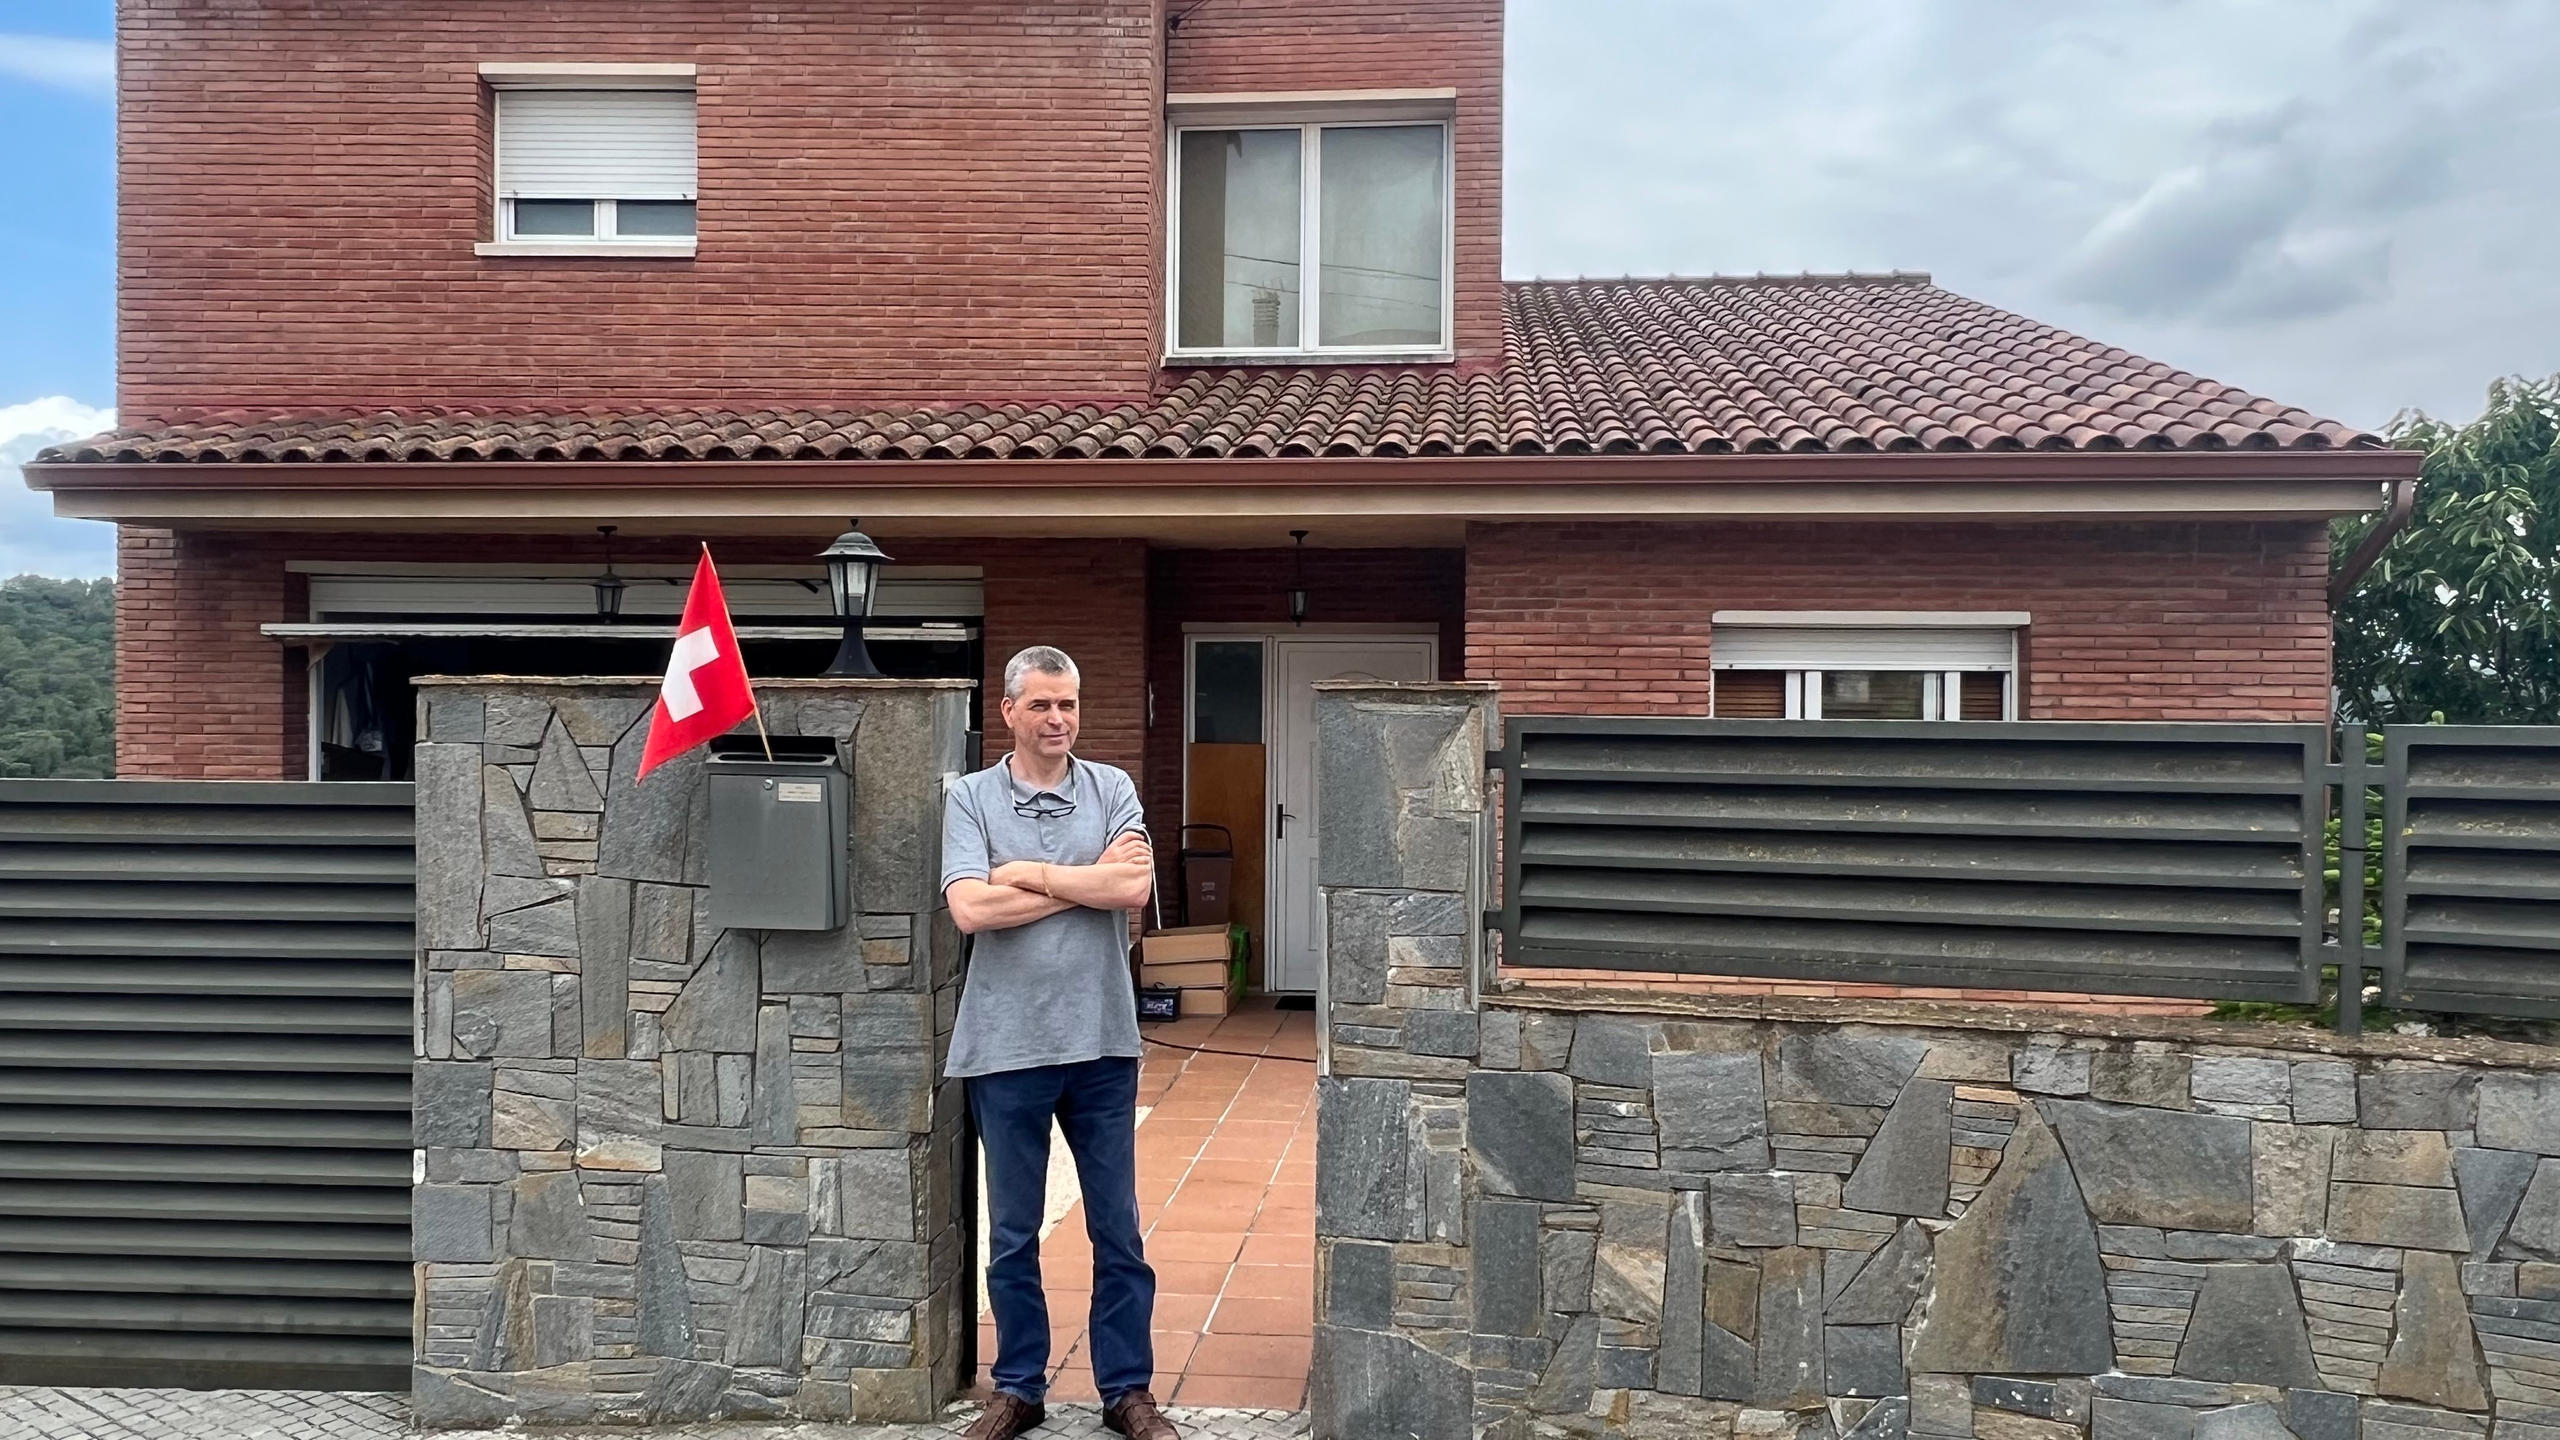 スイス国旗を立てた郵便受けの横に立つ男性